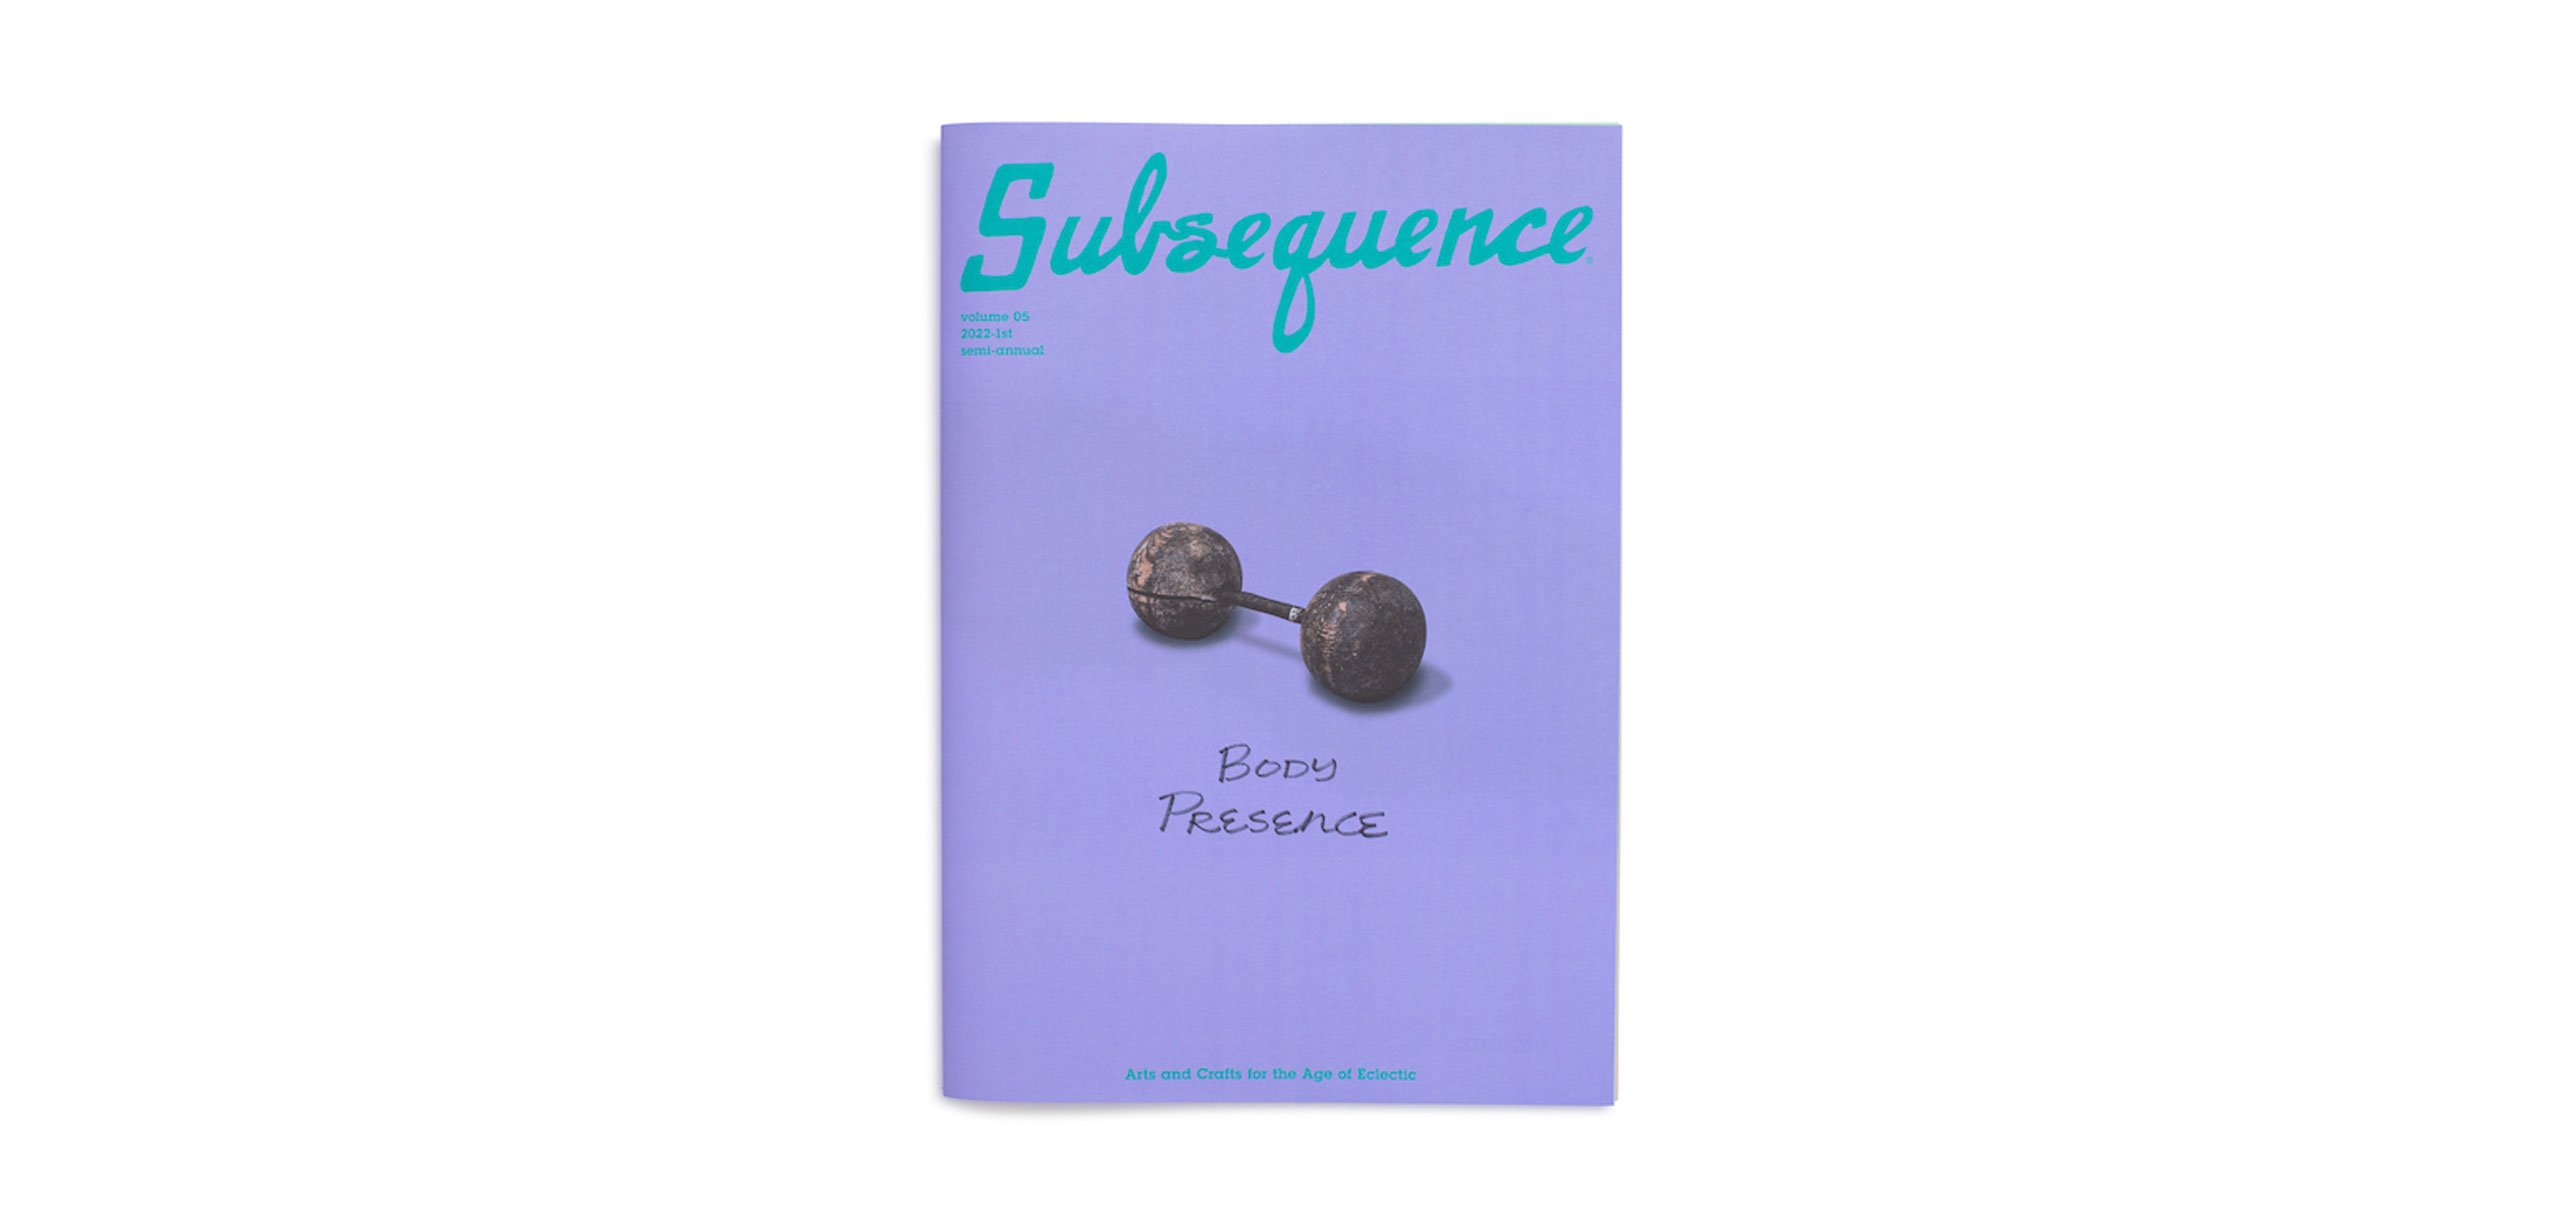 ビズビムが発行する雑誌「Subsequence（サブシークエンス）」とは